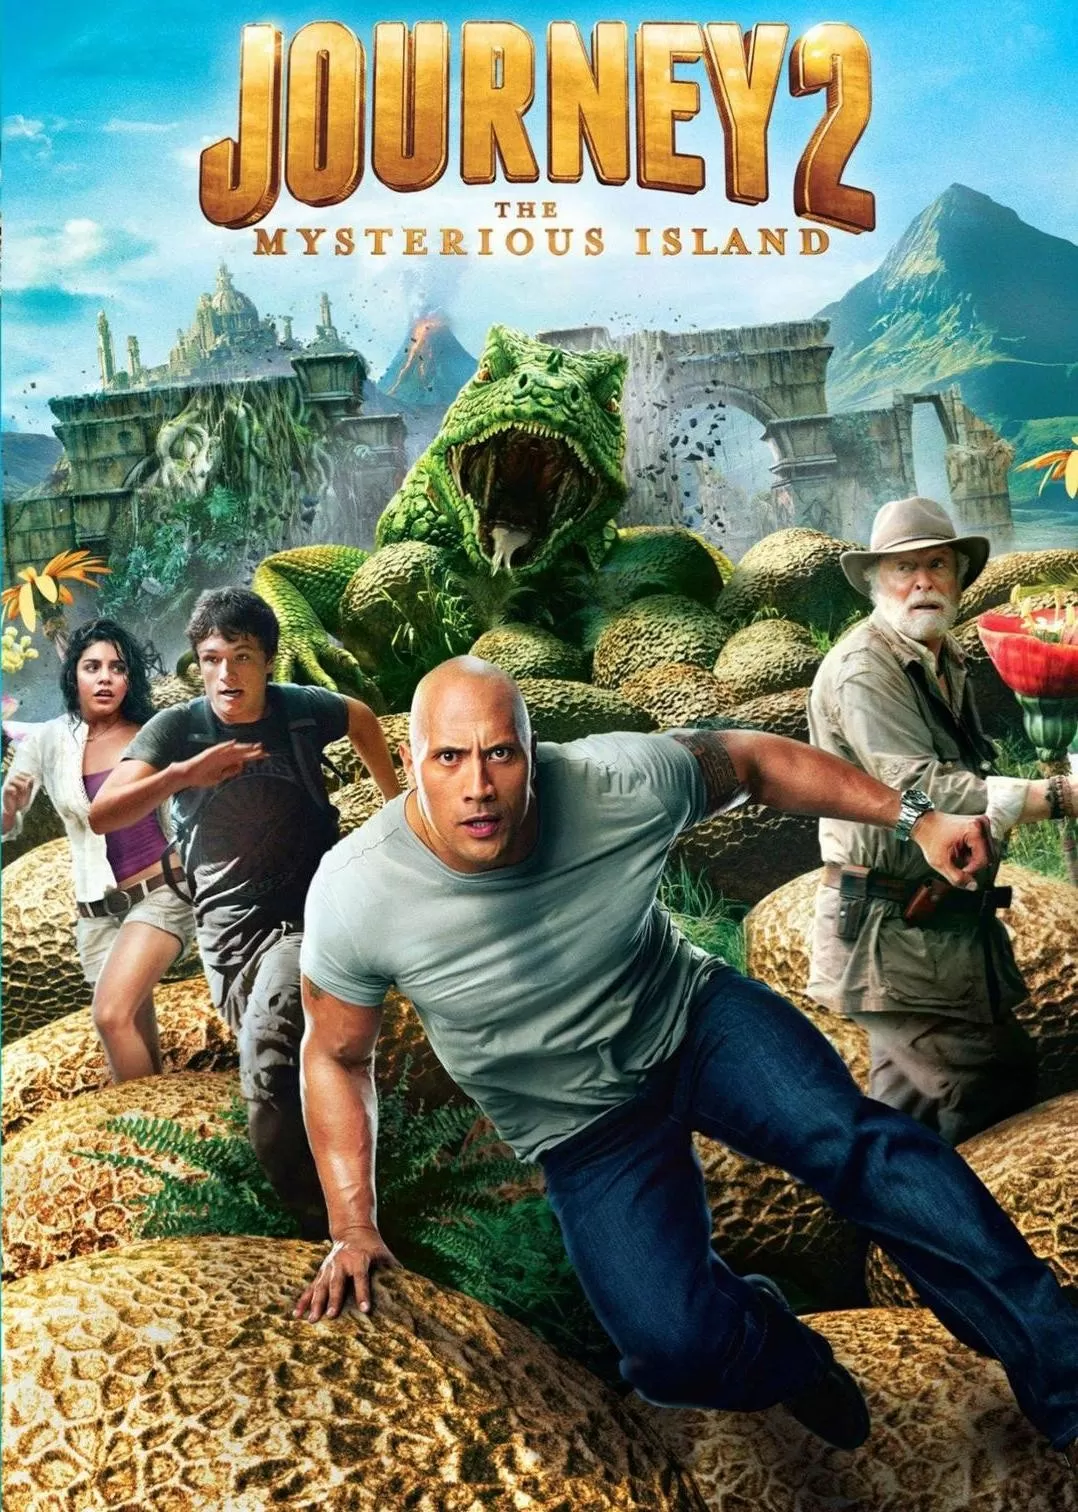 Journey 2 The Mysterious Island (2012) เจอร์นีย์ 2 พิชิตเกาะพิศวงอัศจรรย์สุดโลก ดูหนังออนไลน์ HD